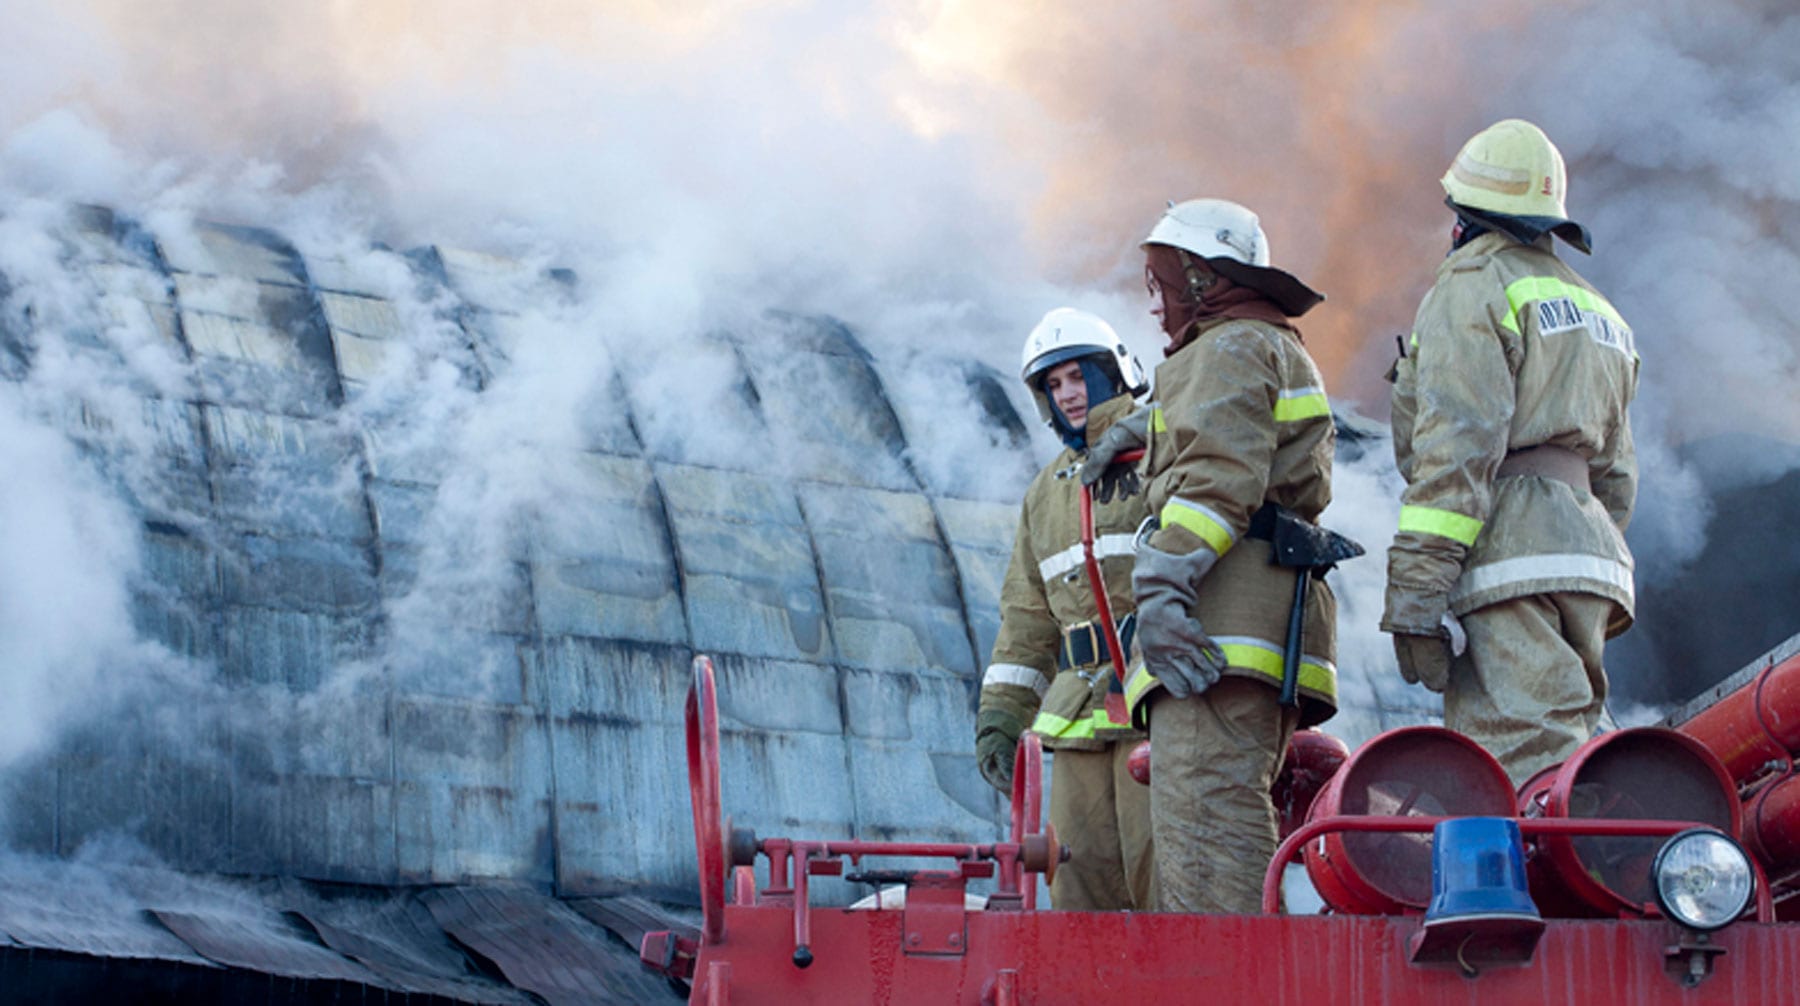 Пожарные рассказали «Шторму» о том, что ценнее — инструкции или человеческие жизни, и справедливо ли уголовное дело против их коллеги из Кемерово Фото: © flickr.com/vadim braydov